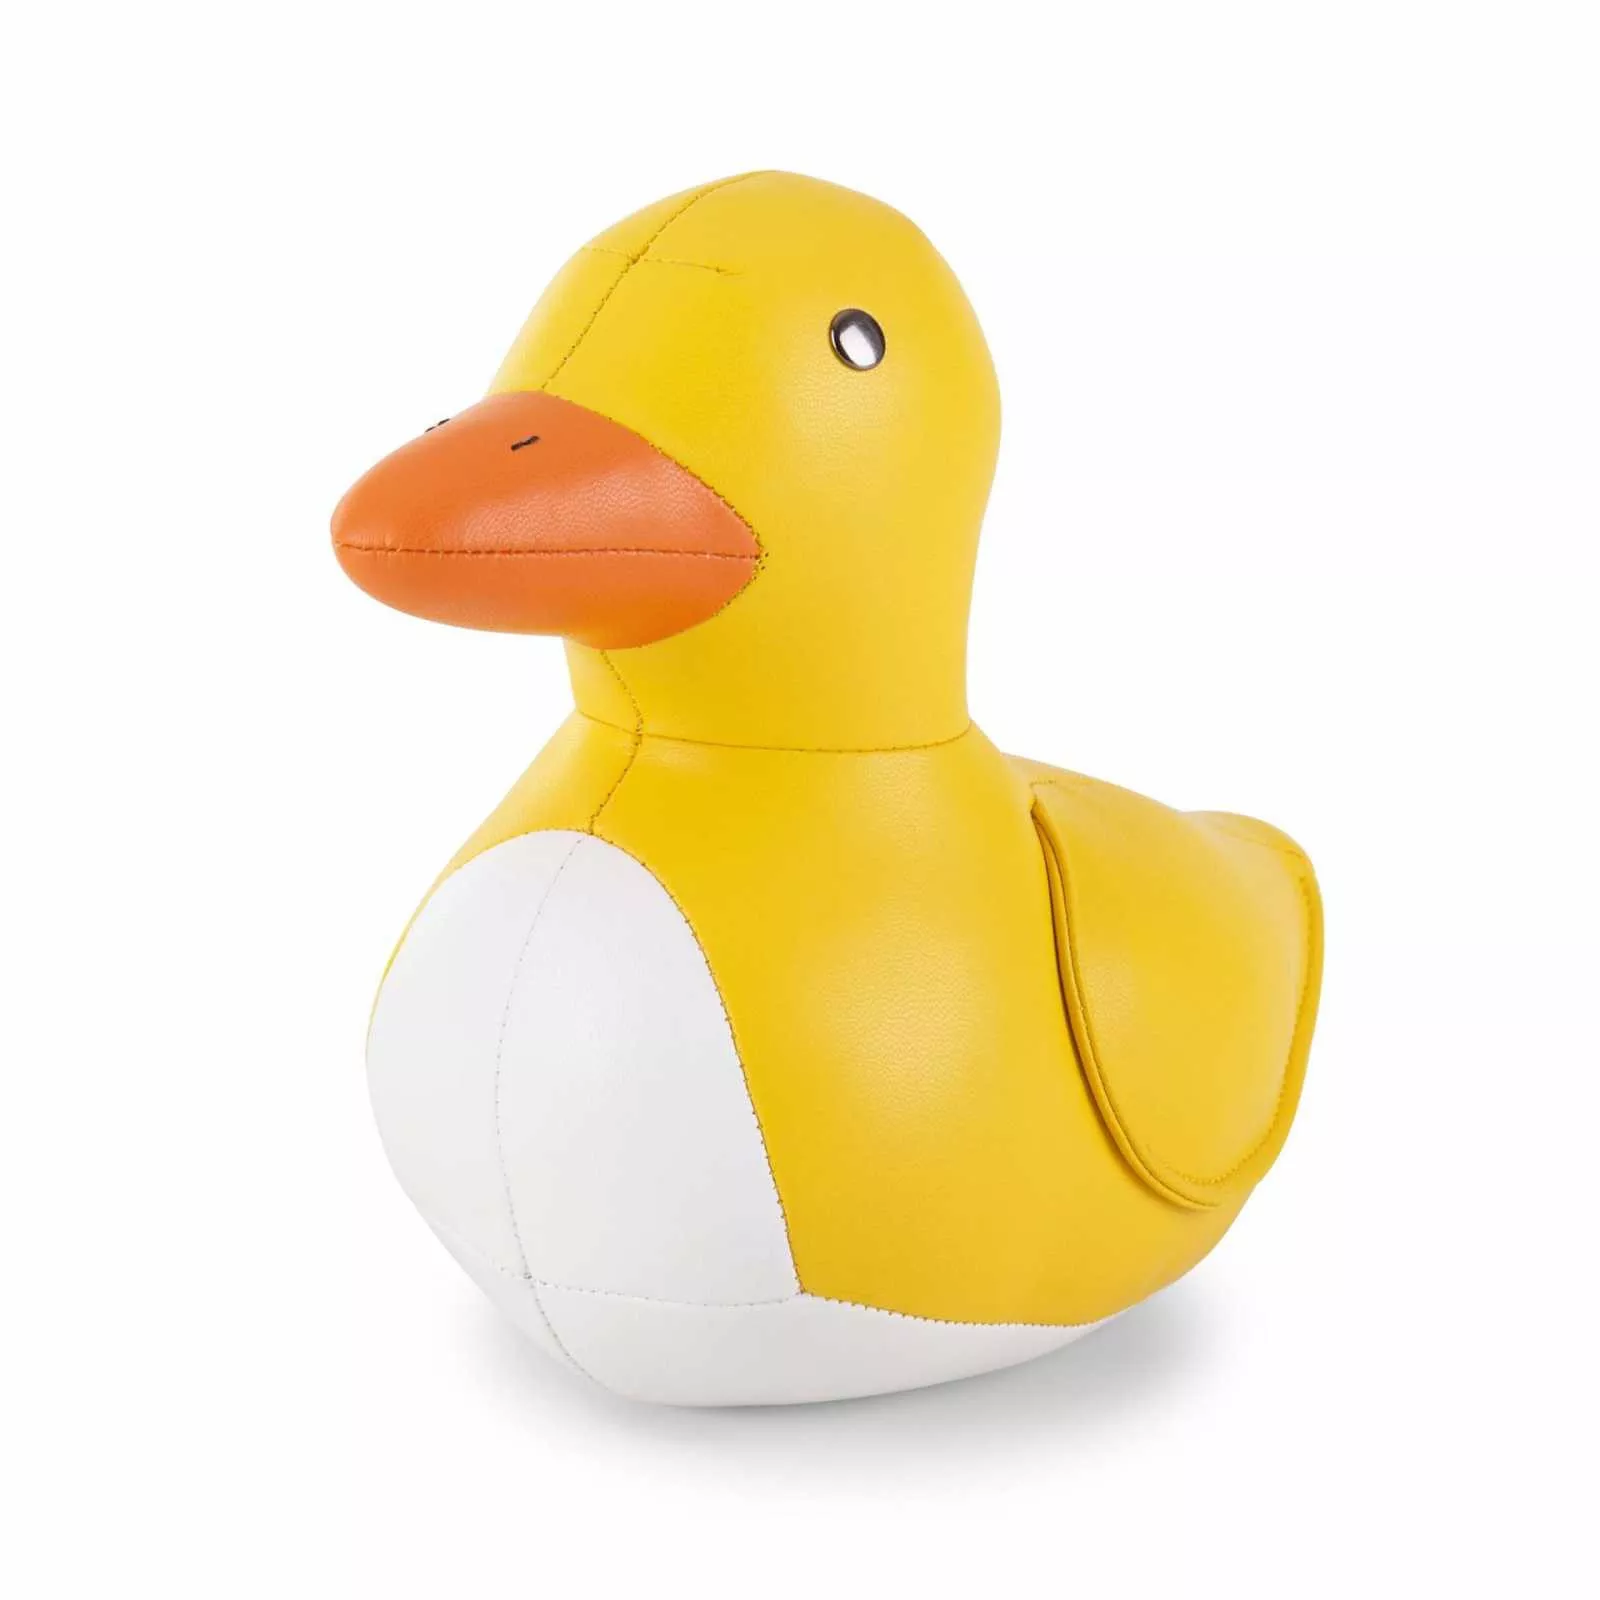 Букенд Duck yellow-white 1 kg Zuny (ZCBV0095-5701) - Фото 1